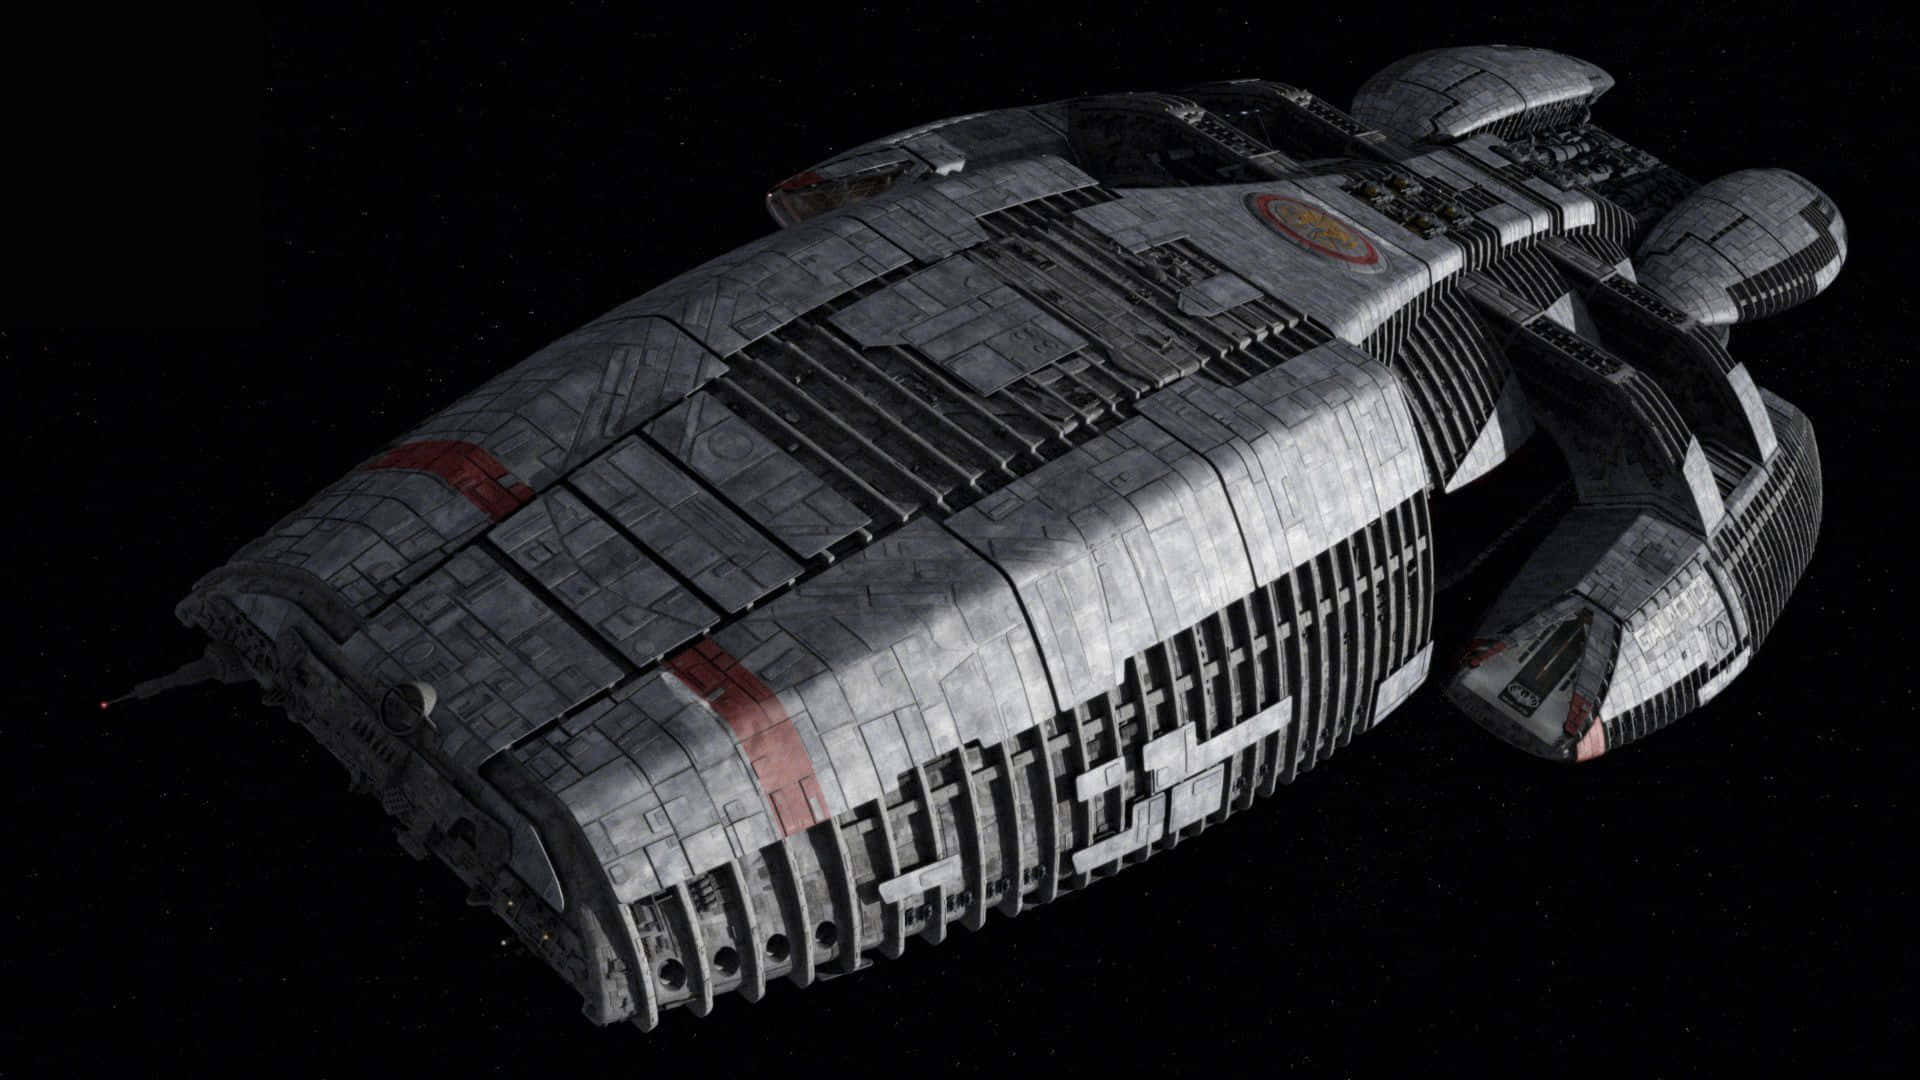 Battlestar Galactica Aircraft In Space Wallpaper